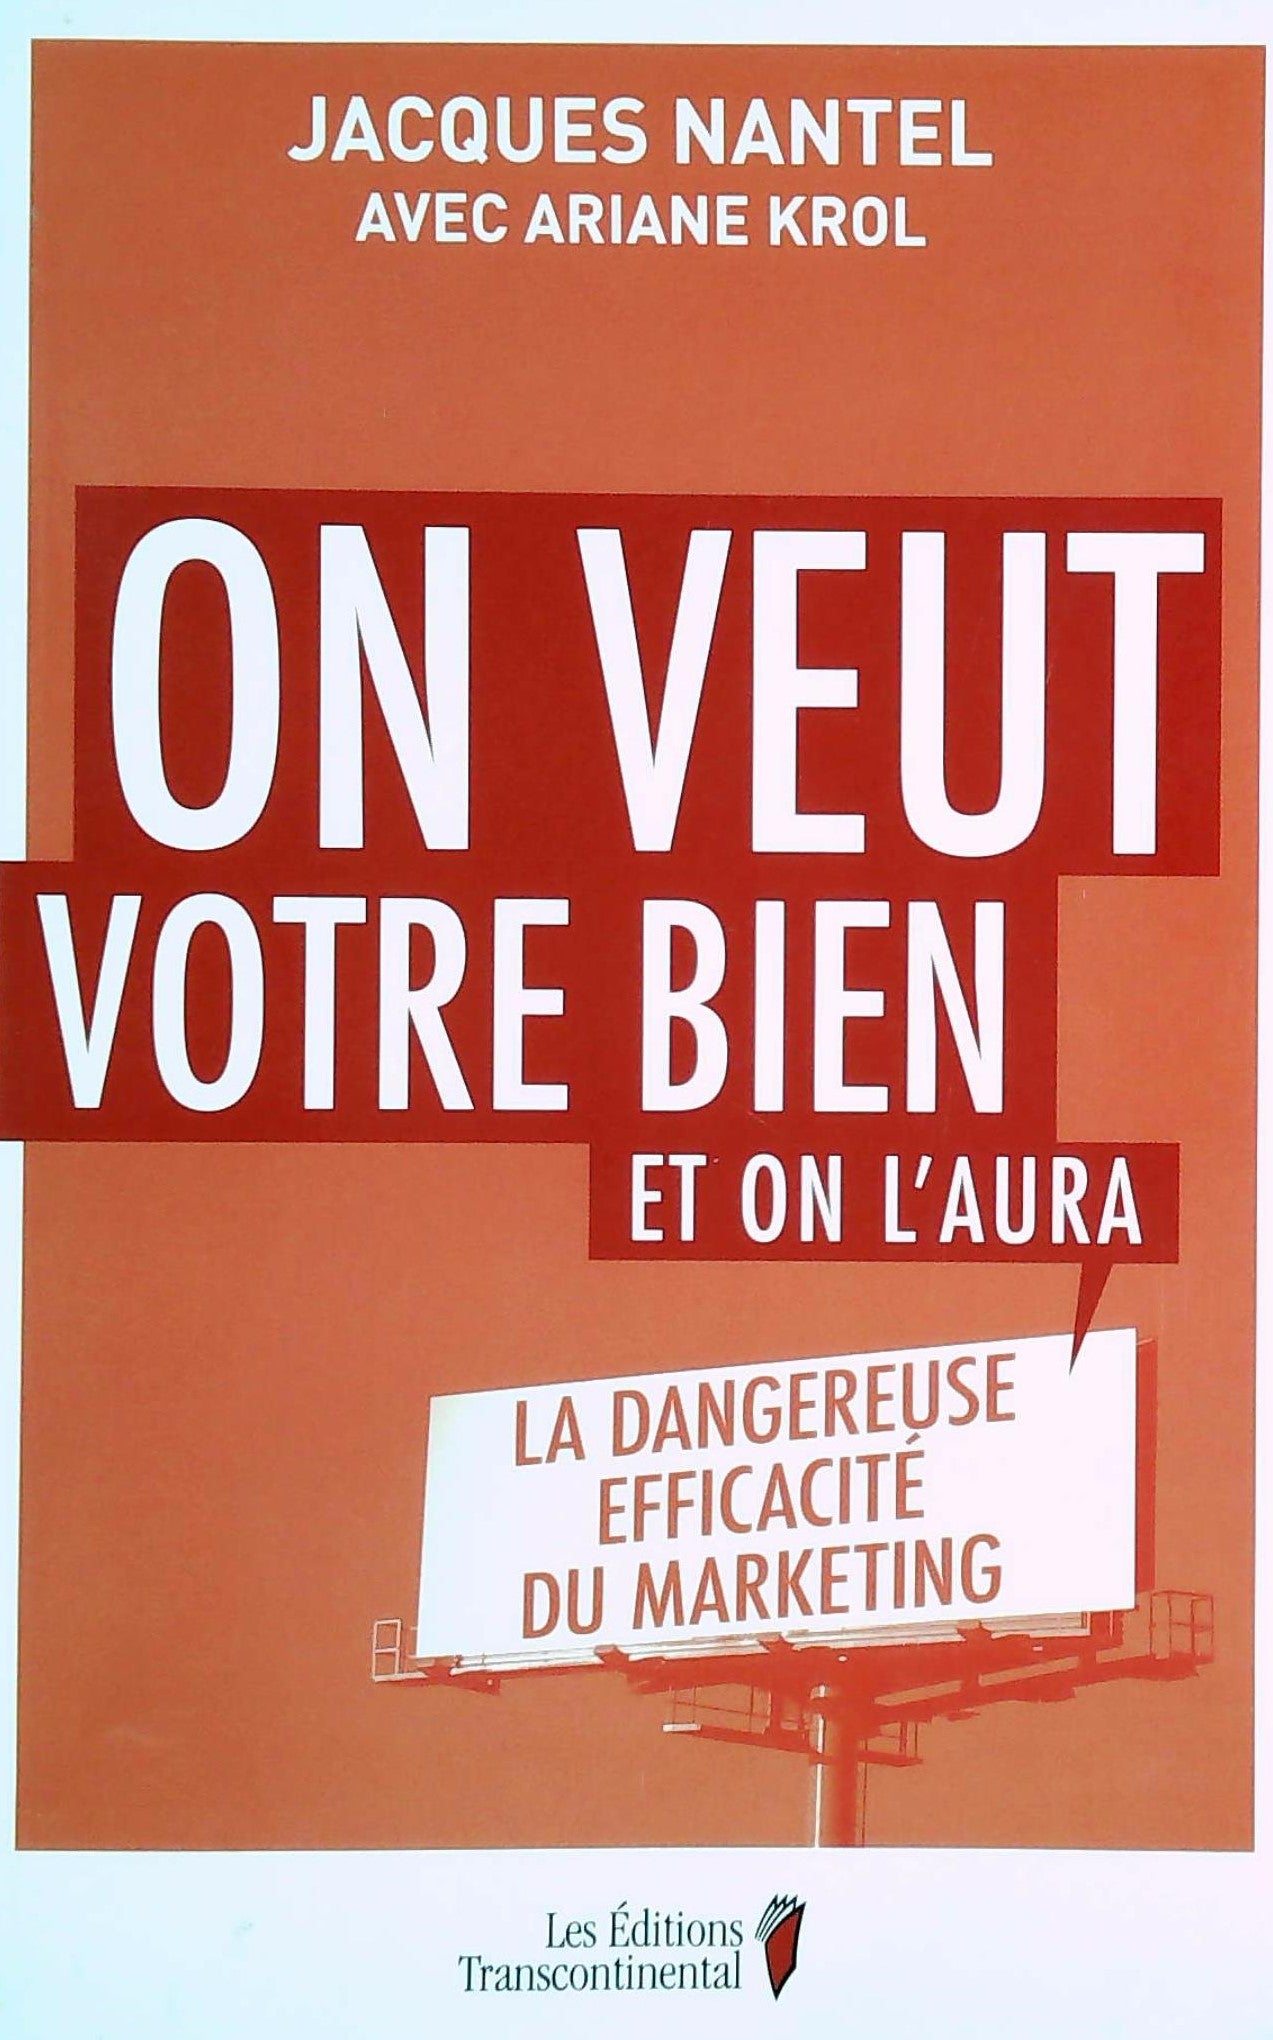 Livre ISBN 2894725507 On veut votre bien et on l'aura : La dangereuse efficacité du marketing (Jacques Nantel)